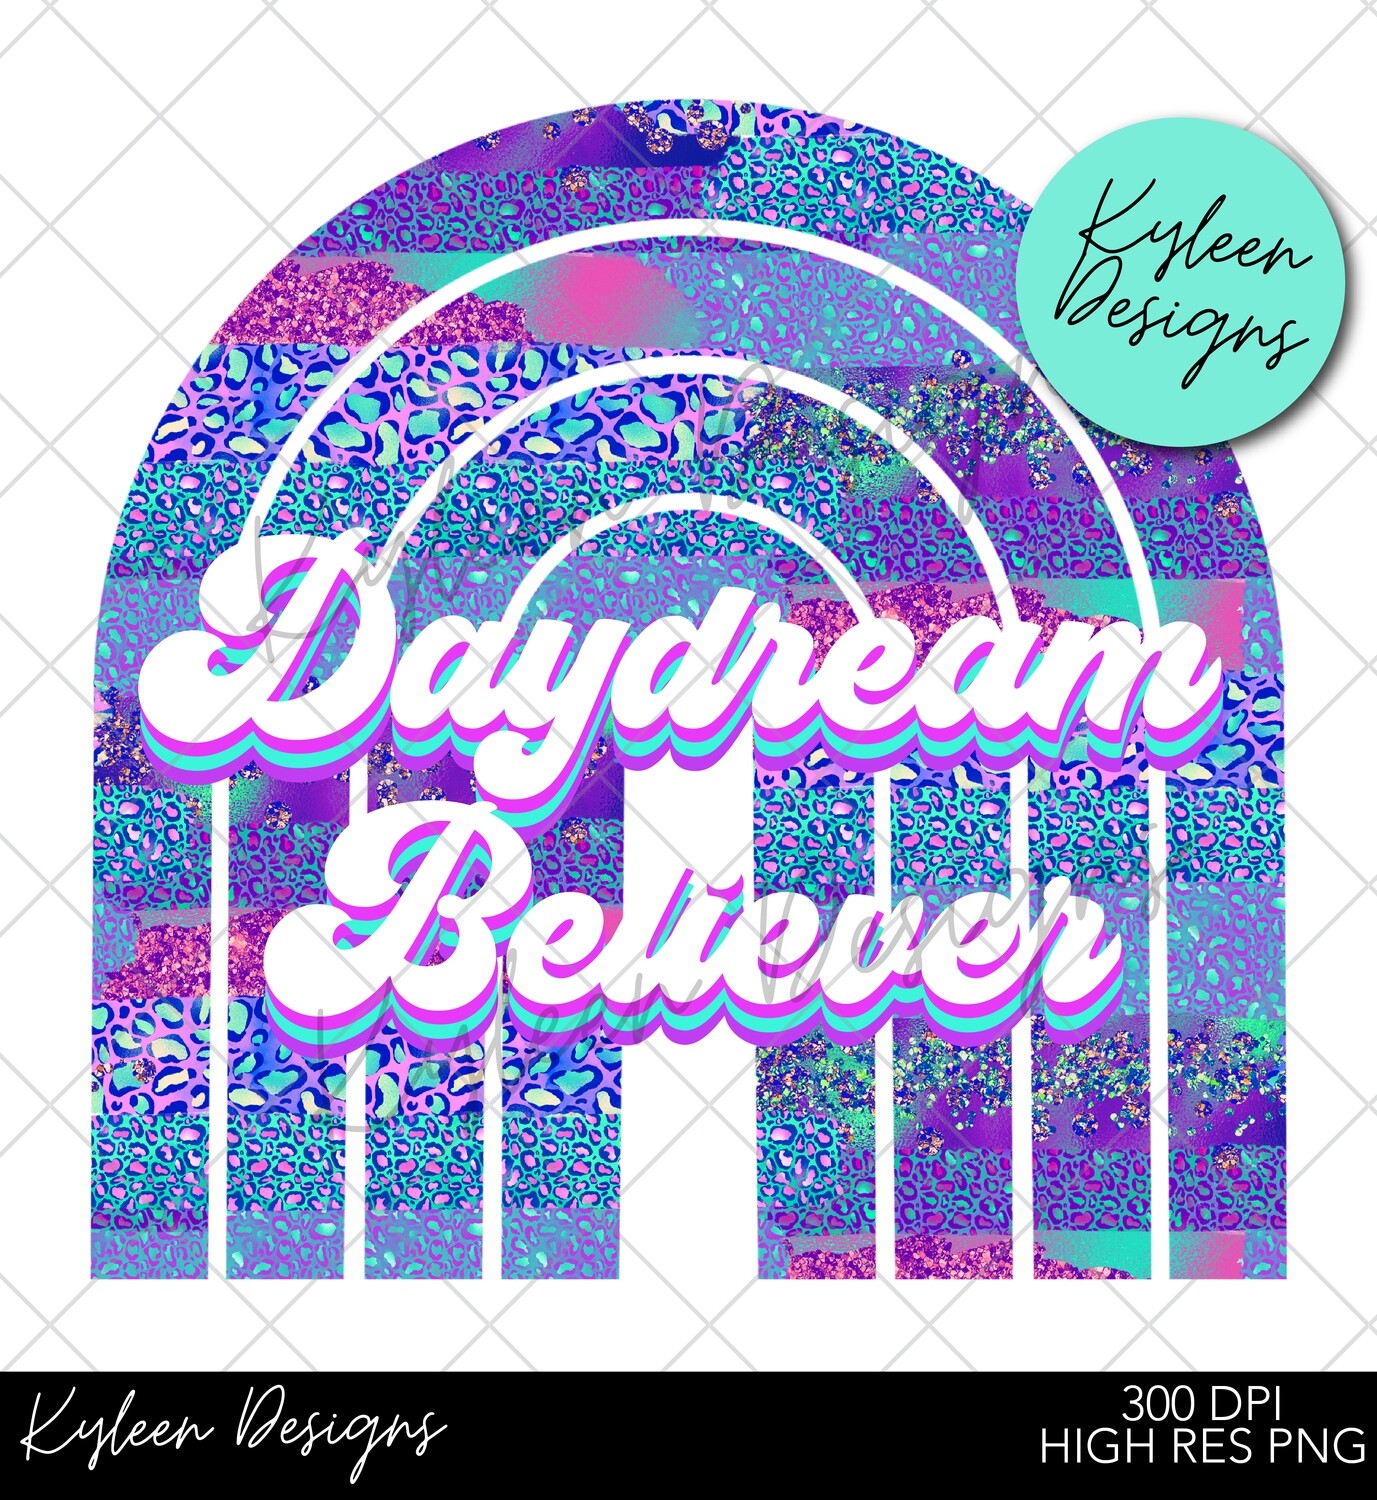 Daydream believer 300 DPI file